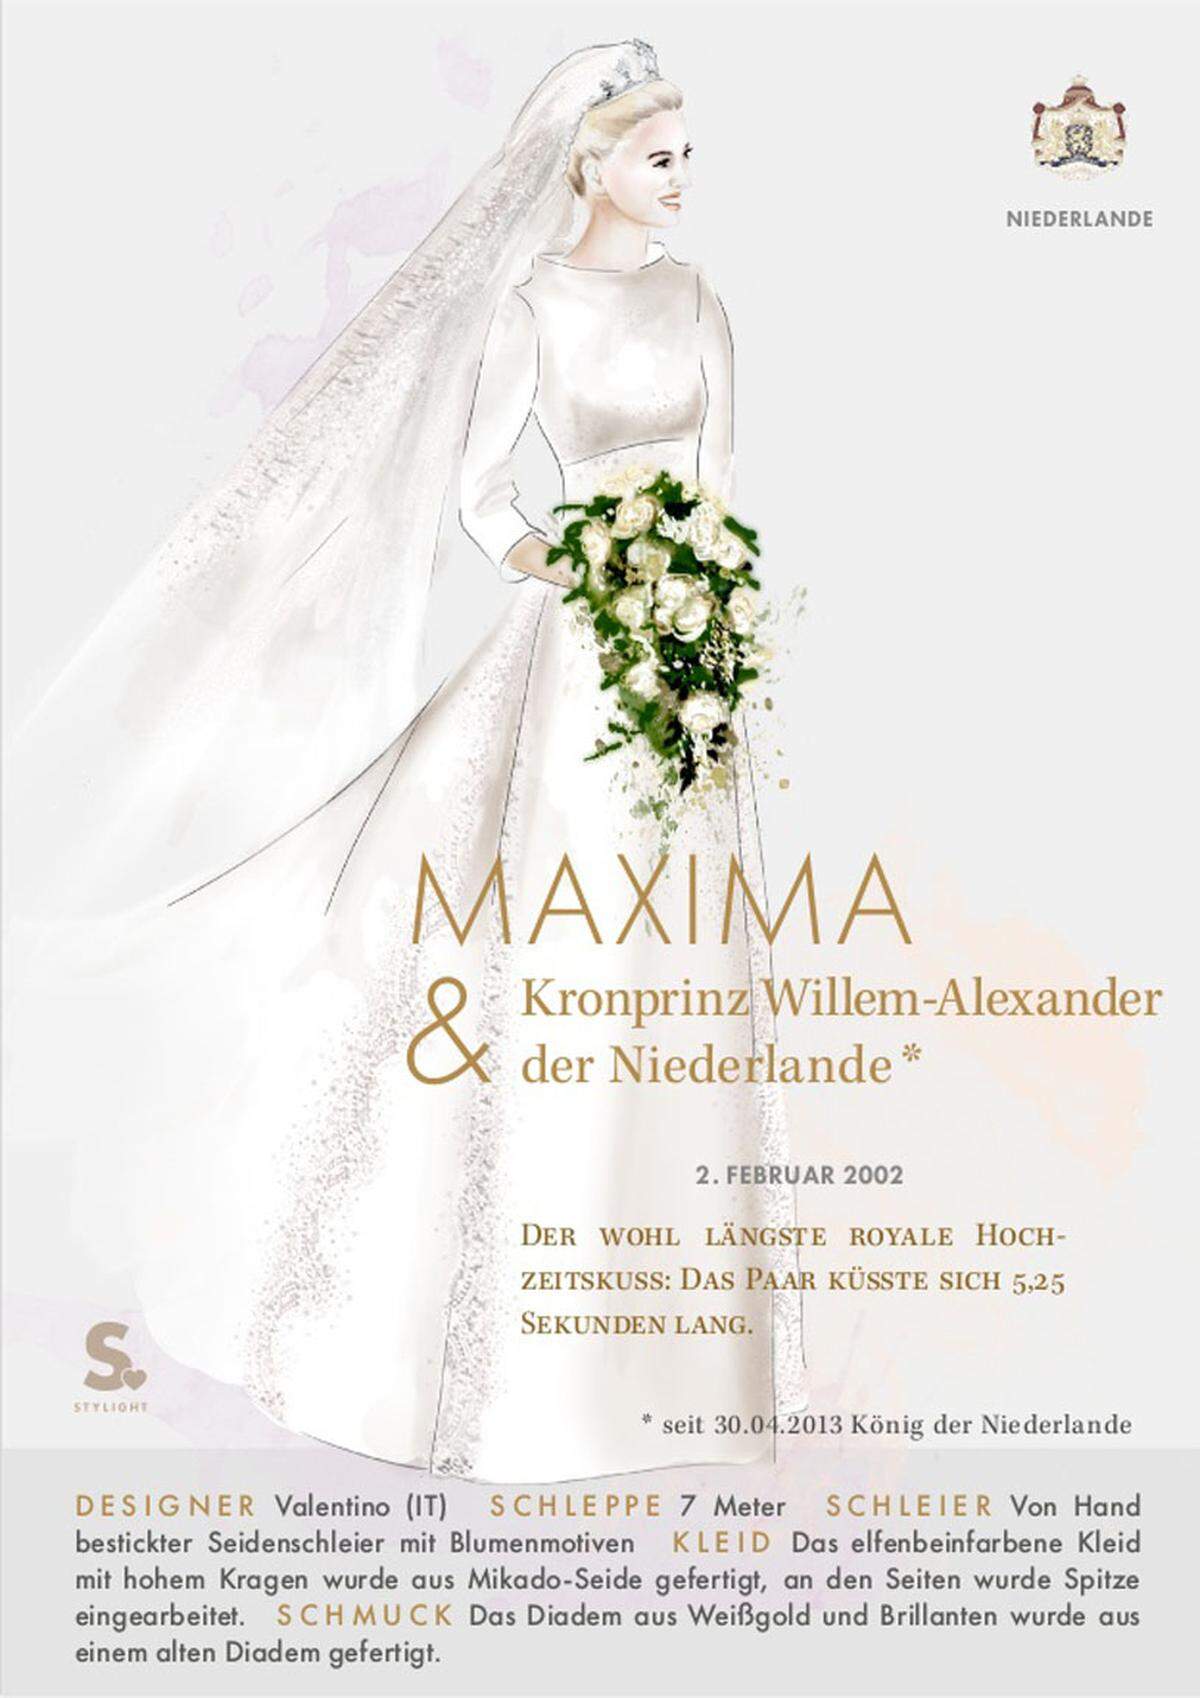 Valentino war auch der Designer von Maximas Brautkleid, das aus Mikado-Seide gefertigt wurde.